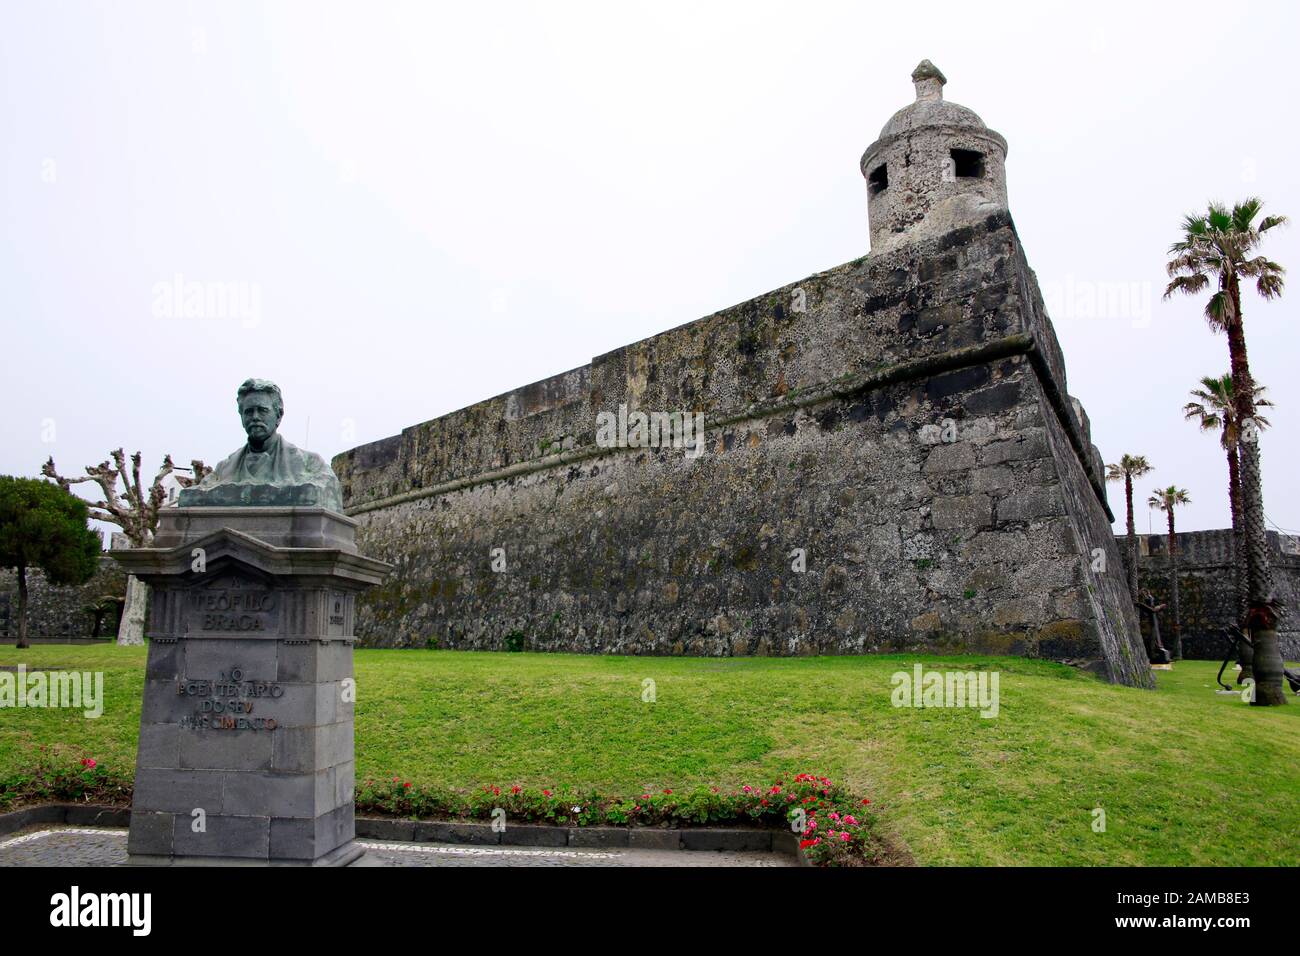 Büste von Teofilo Braga vor der Festungsmauer von Fort Sao Bras, Ponta Delgada, Sao Miguel, Azoren, Portugal Stock Photo